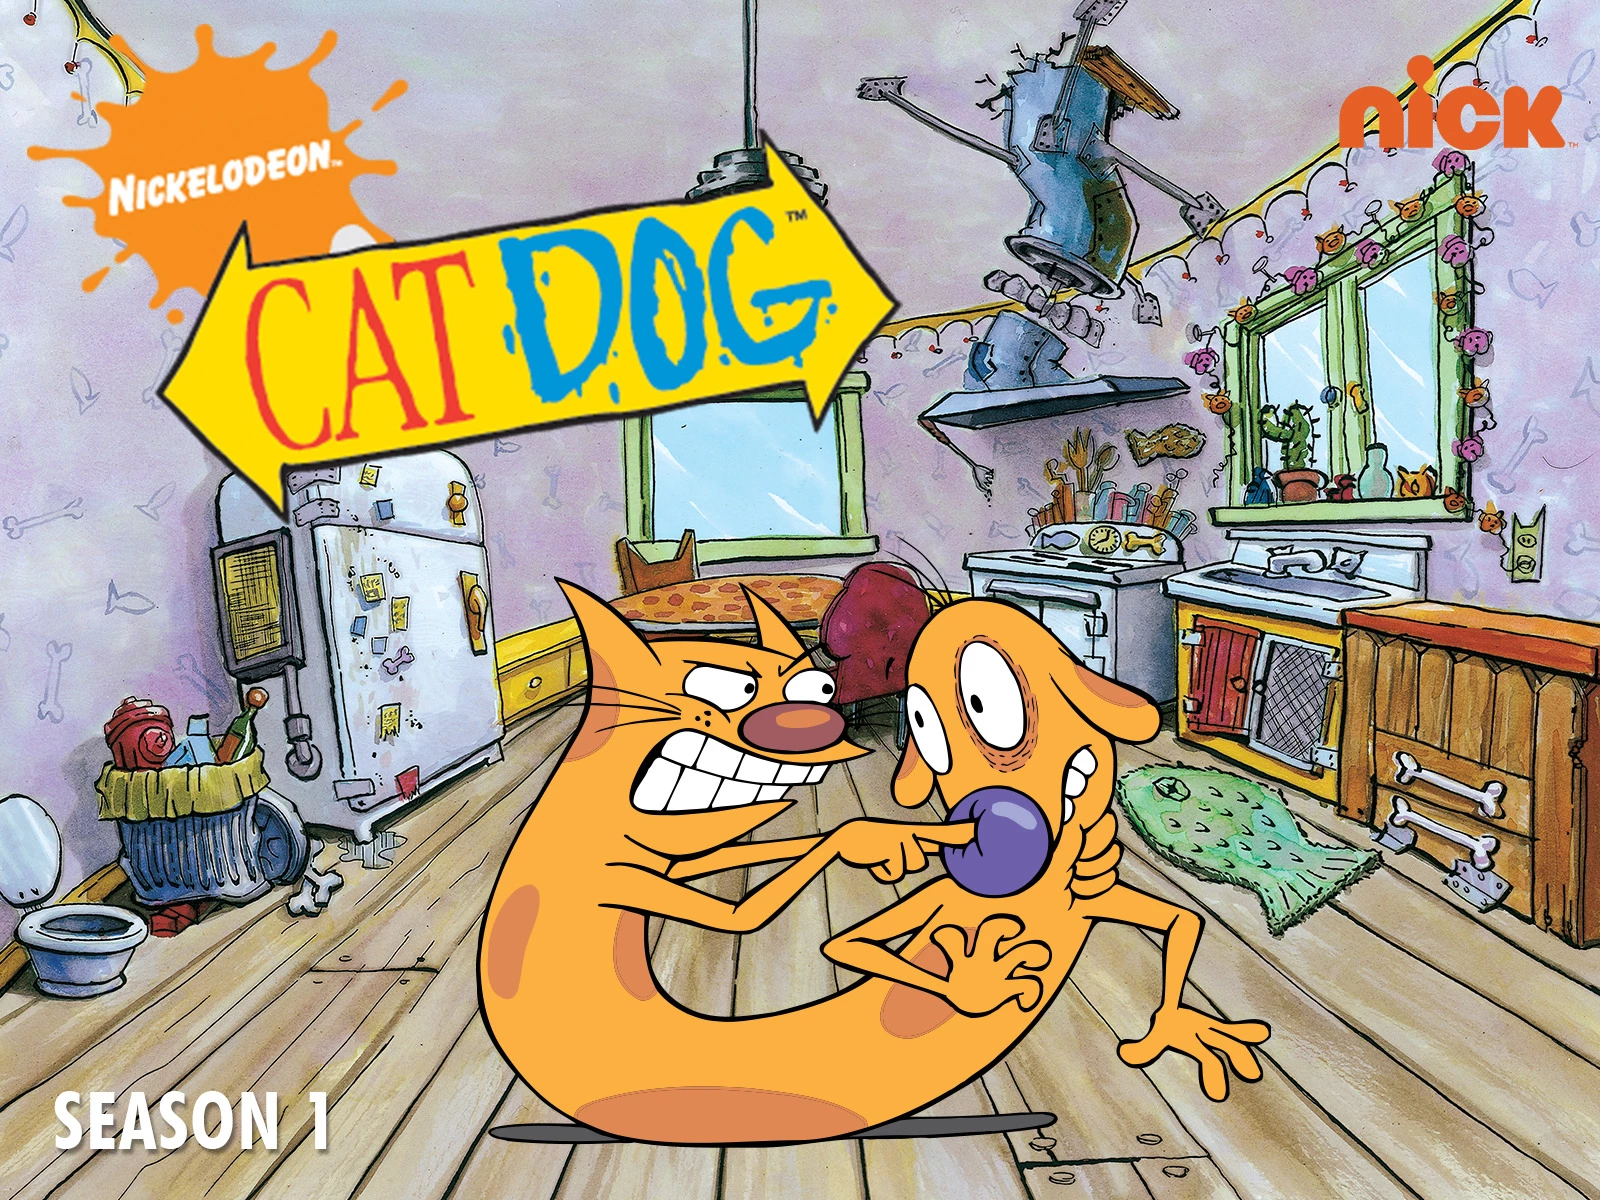 nickelodeon cartoons 2010s: CatDog